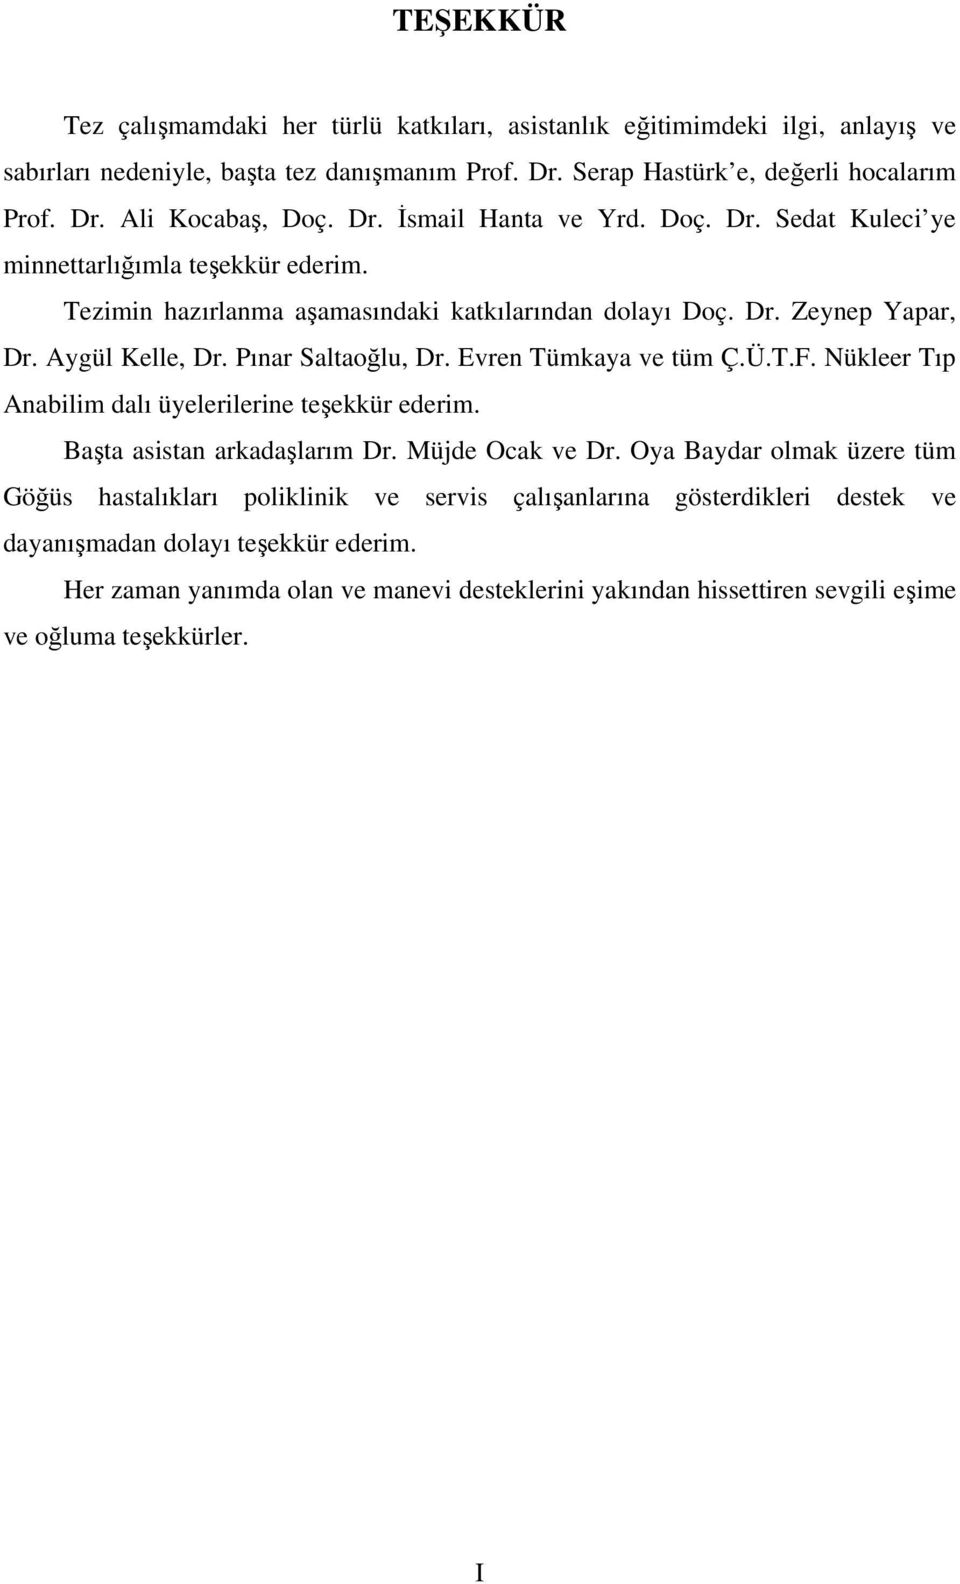 Pınar Saltaoğlu, Dr. Evren Tümkaya ve tüm Ç.Ü.T.F. Nükleer Tıp Anabilim dalı üyelerilerine teşekkür ederim. Başta asistan arkadaşlarım Dr. Müjde Ocak ve Dr.